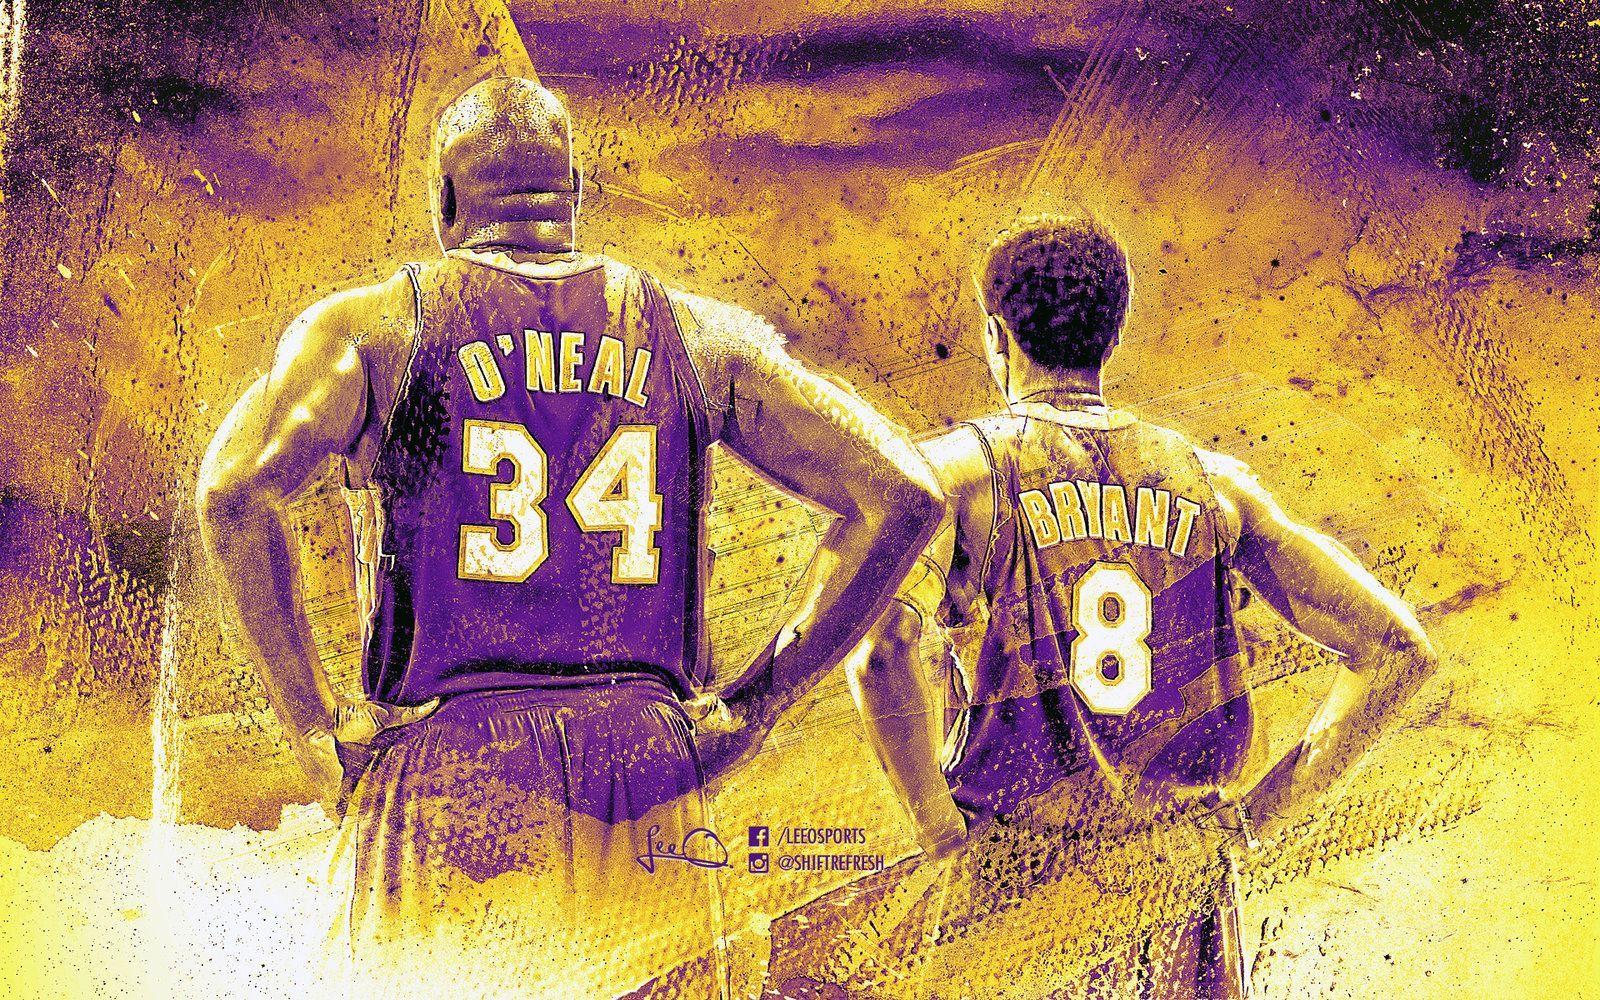 Shaq and Kobe Lakers Wallpaper. Lakers wallpaper, Shaq and kobe, Lakers